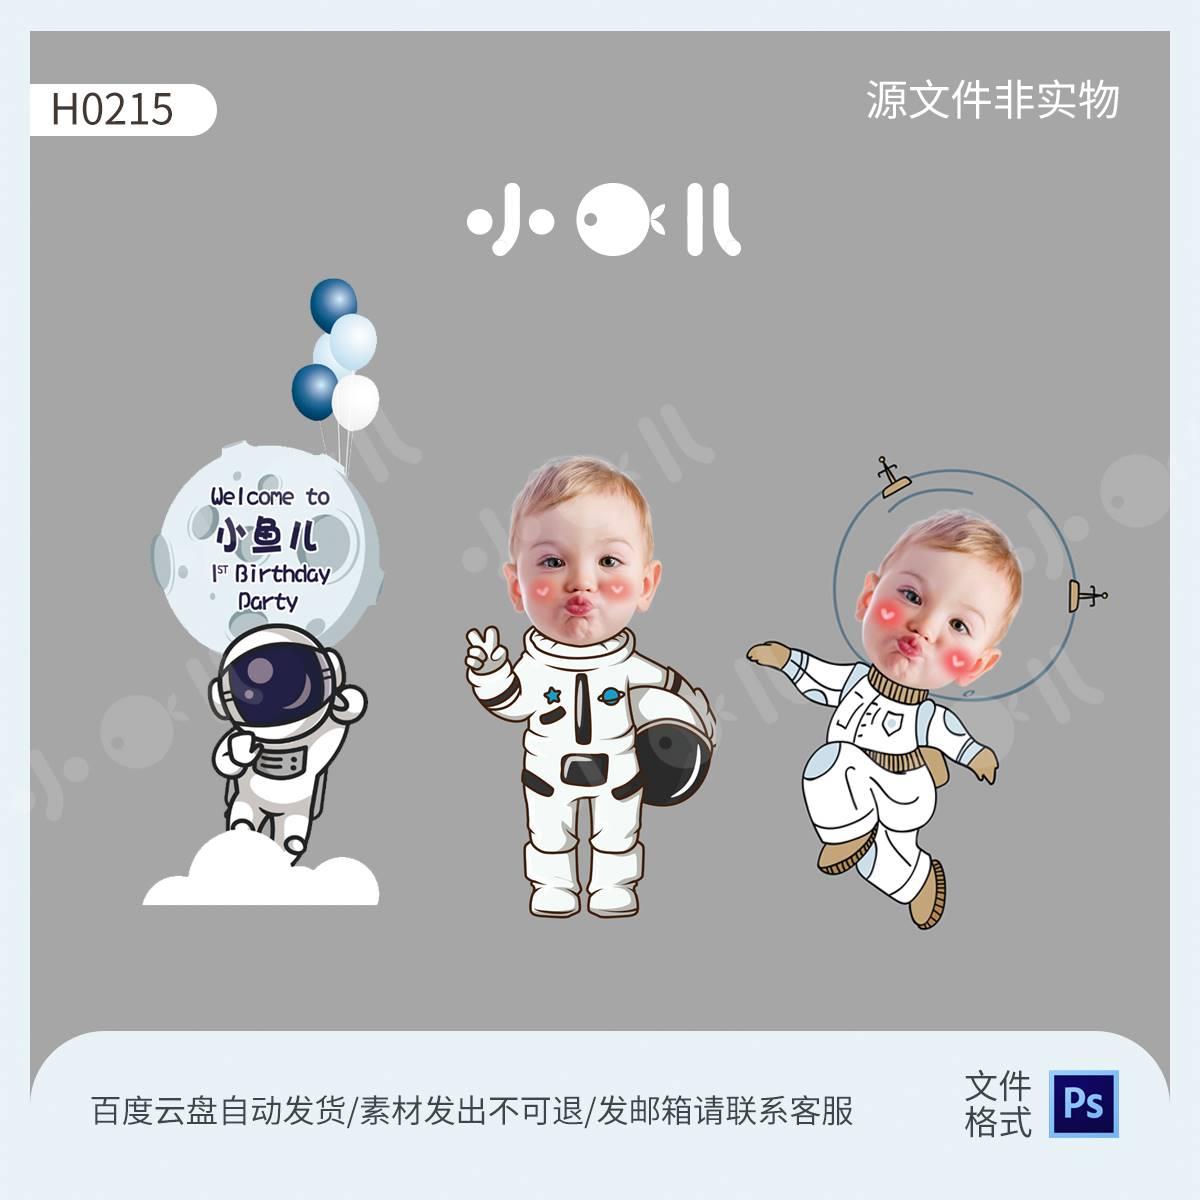 太空宇航员迎宾牌大头娃娃照片手绘宝宝派对通用设计素材